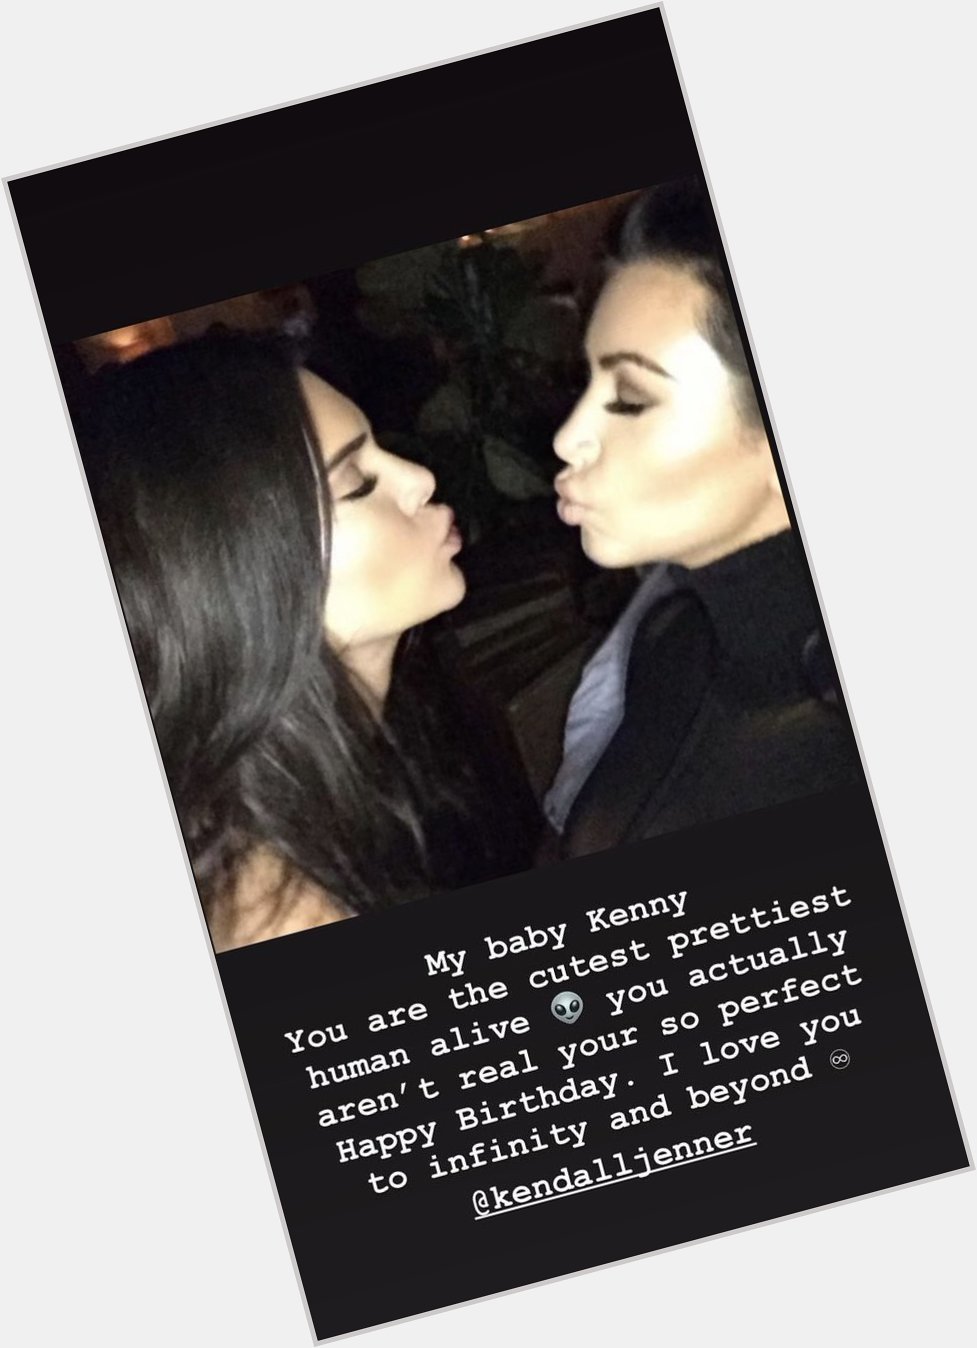 Kim Kardashian wishing a happy birthday to Kendall on her Instagram story! 